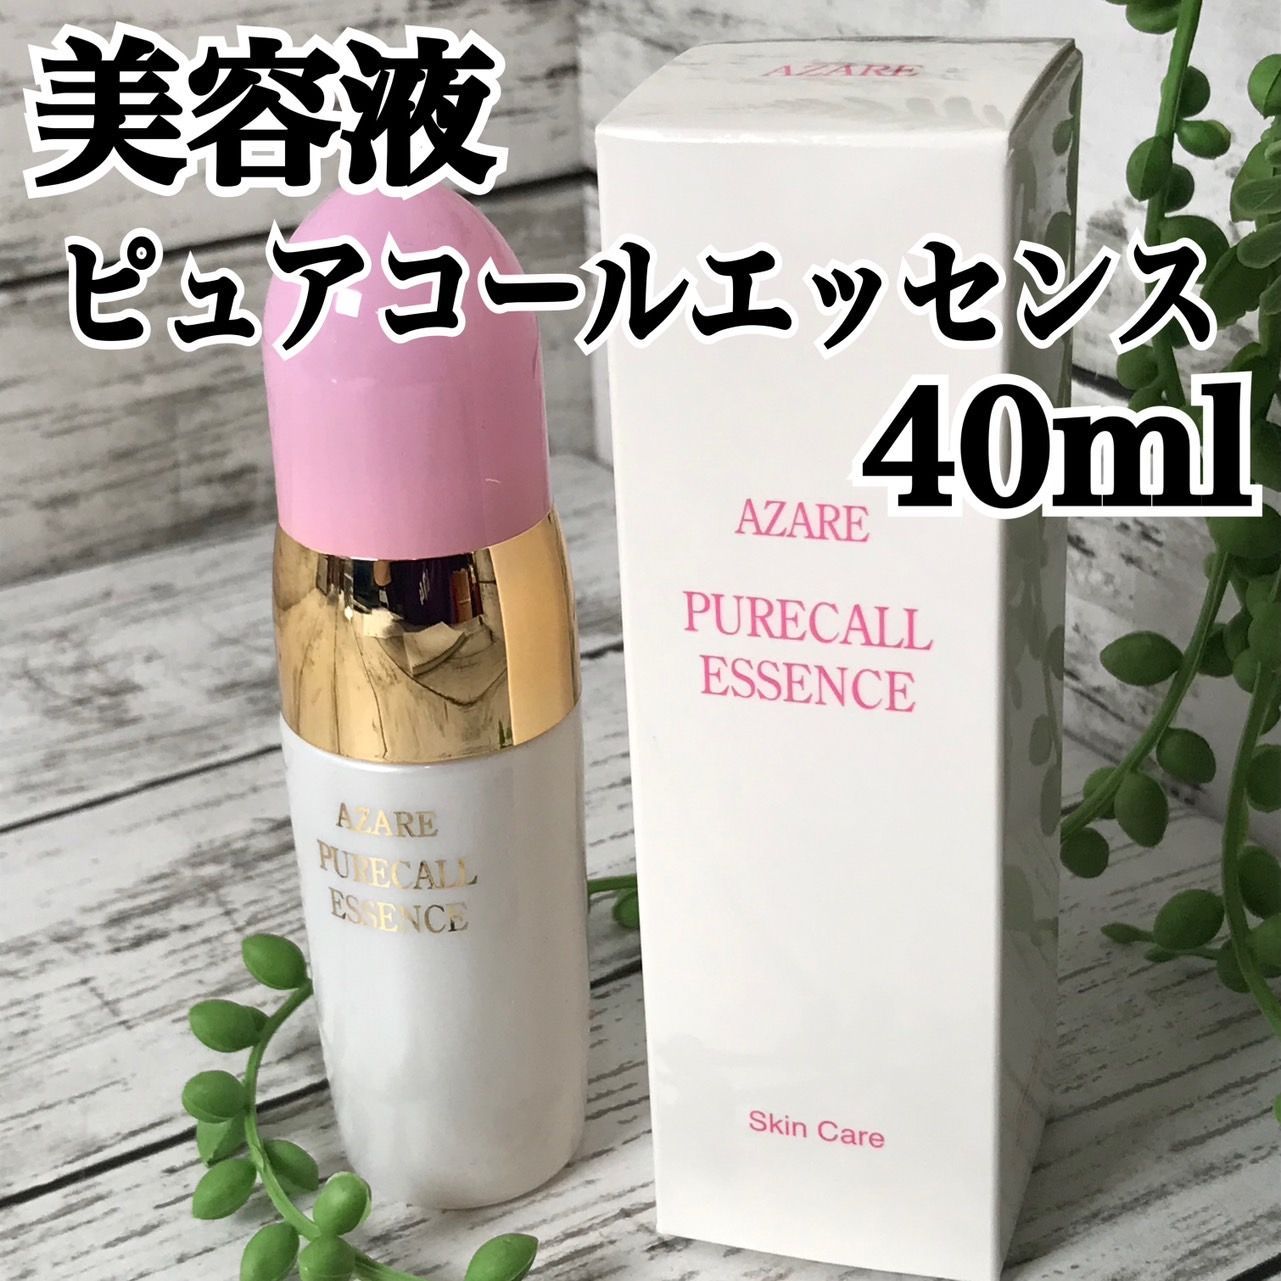 アザレ化粧品 ピュアコールエッセンス 40ml - 美容液